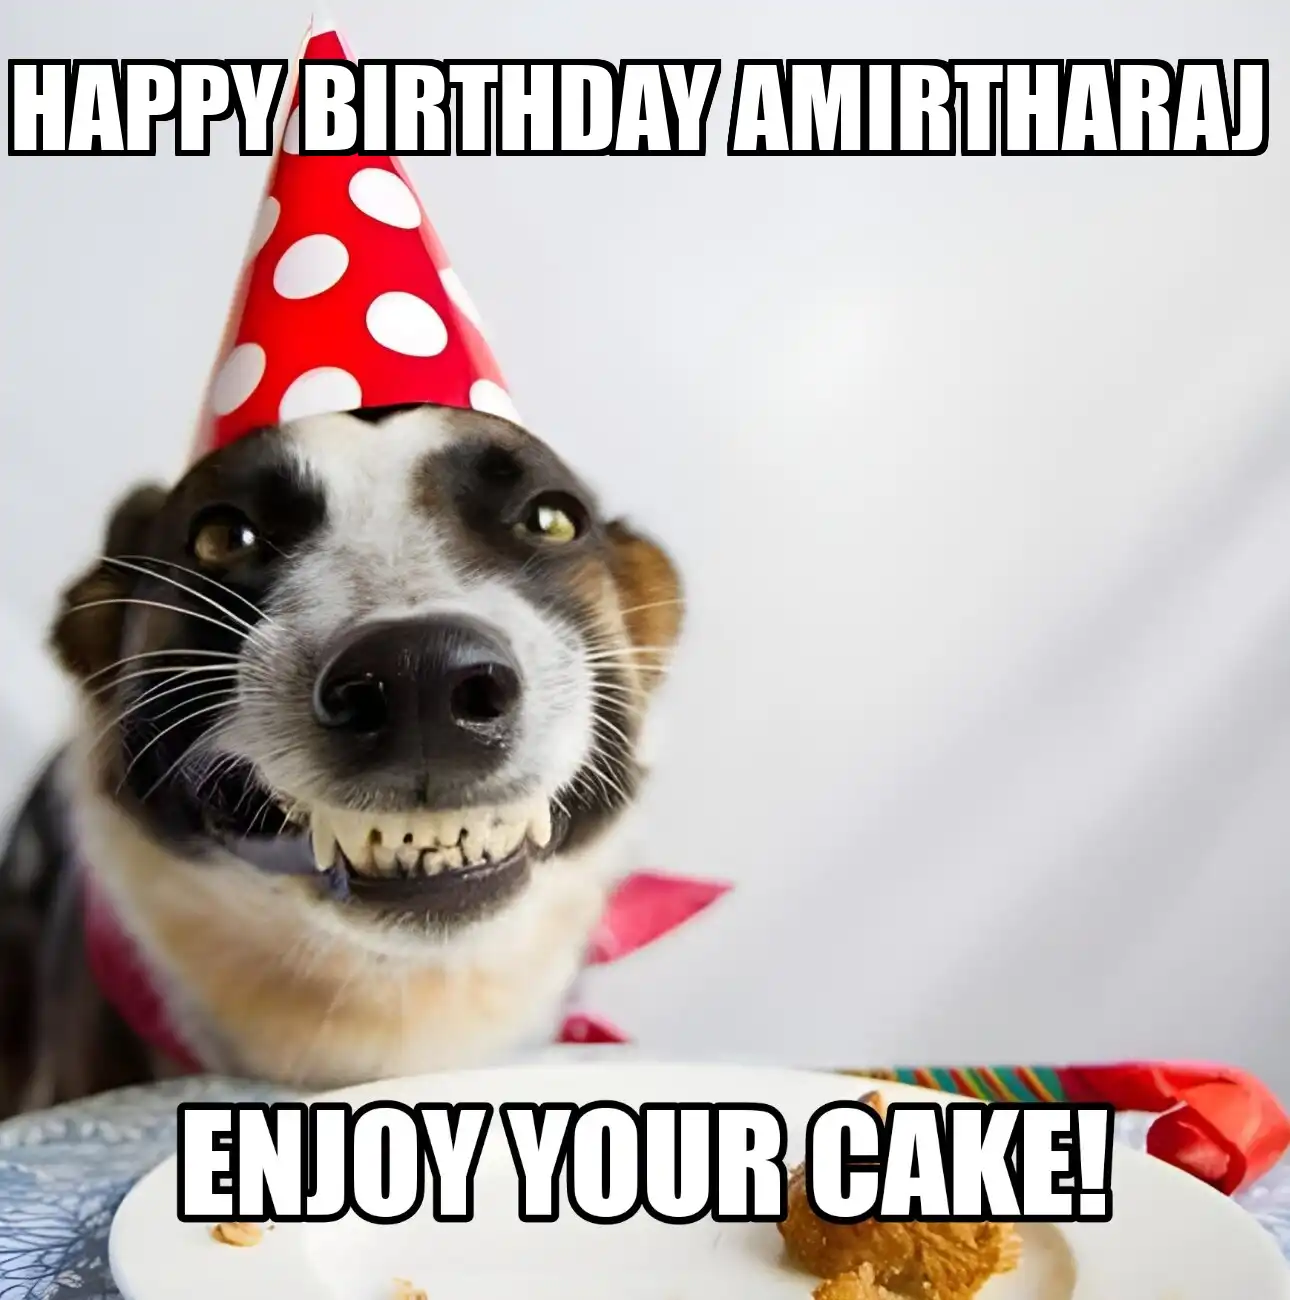 Happy Birthday Amirtharaj Enjoy Your Cake Dog Meme